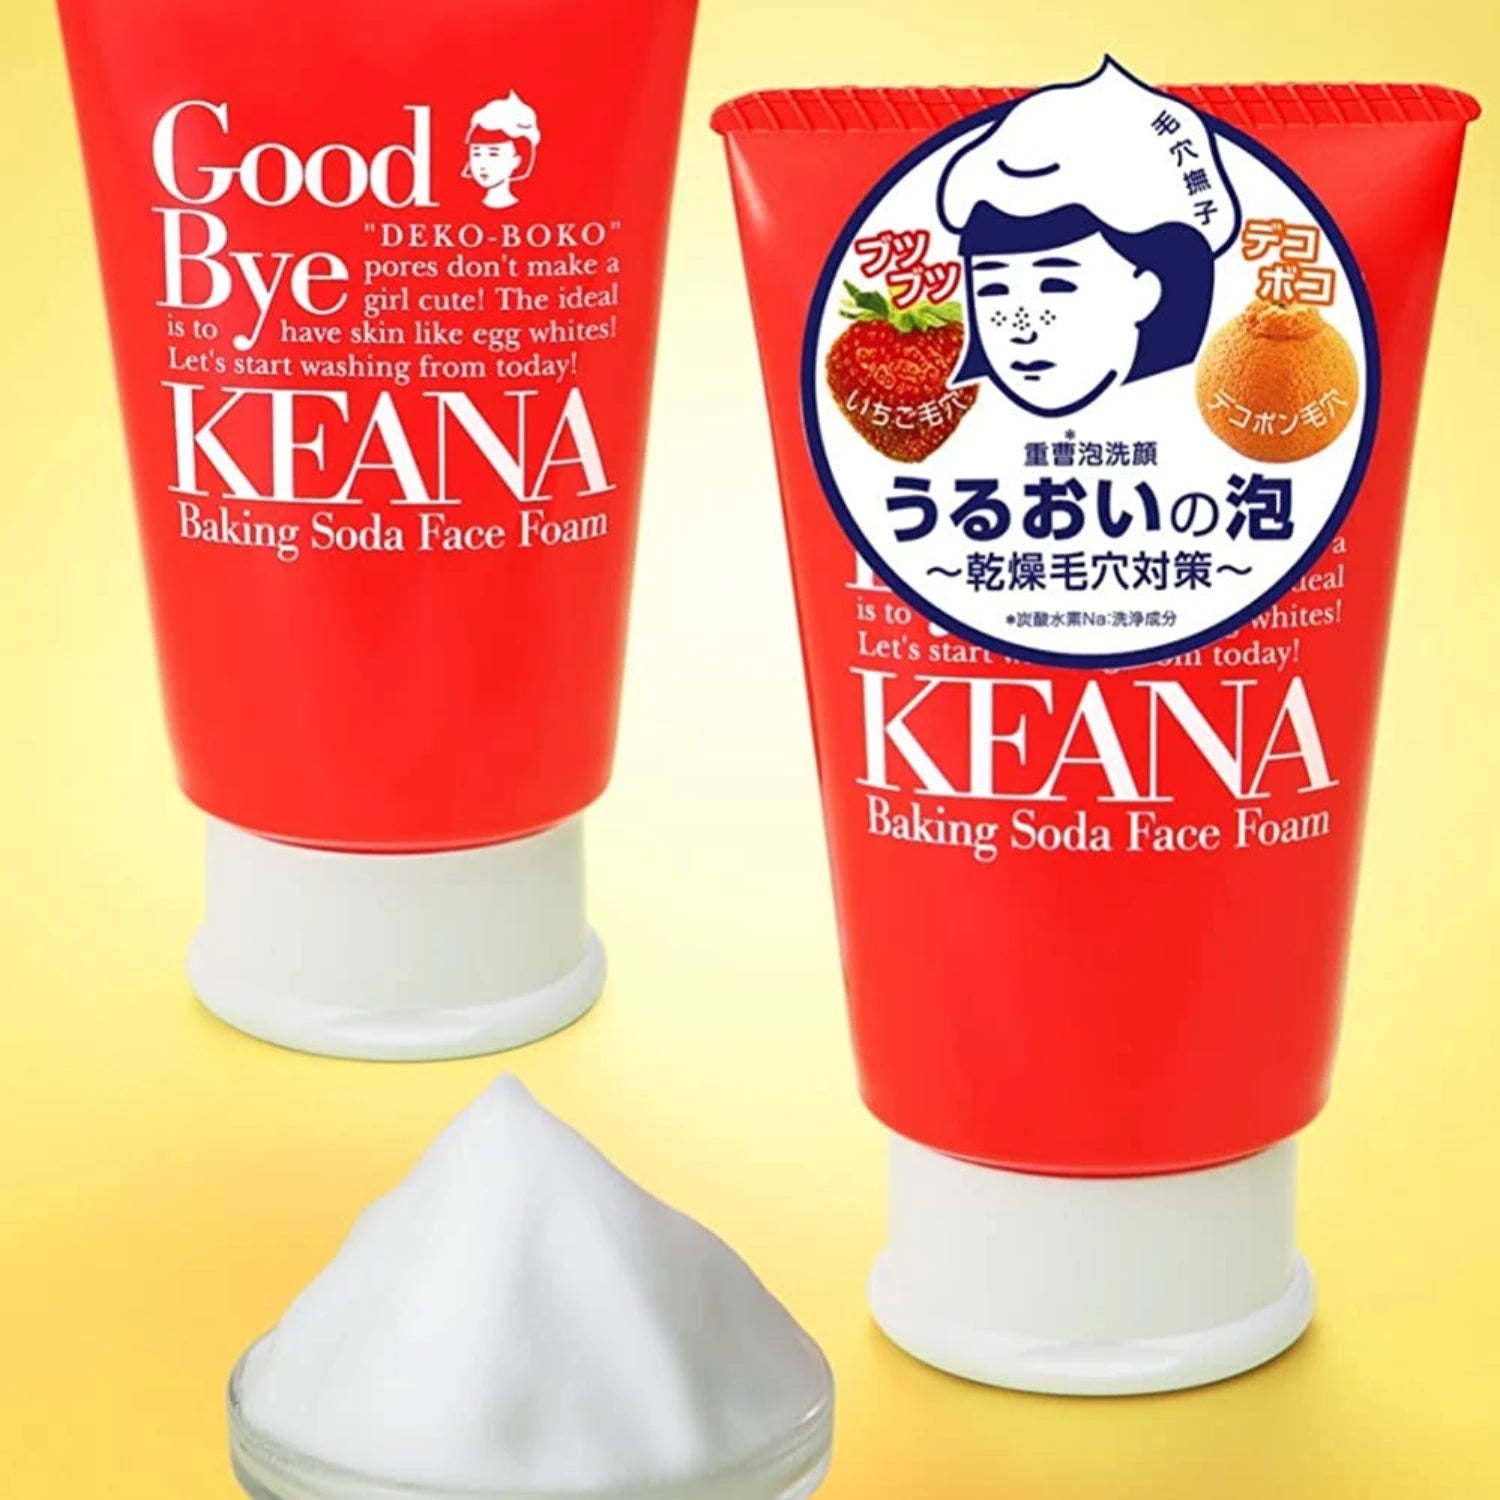 Keana Baking Soda Face Foam 100g - Buy Me Japan